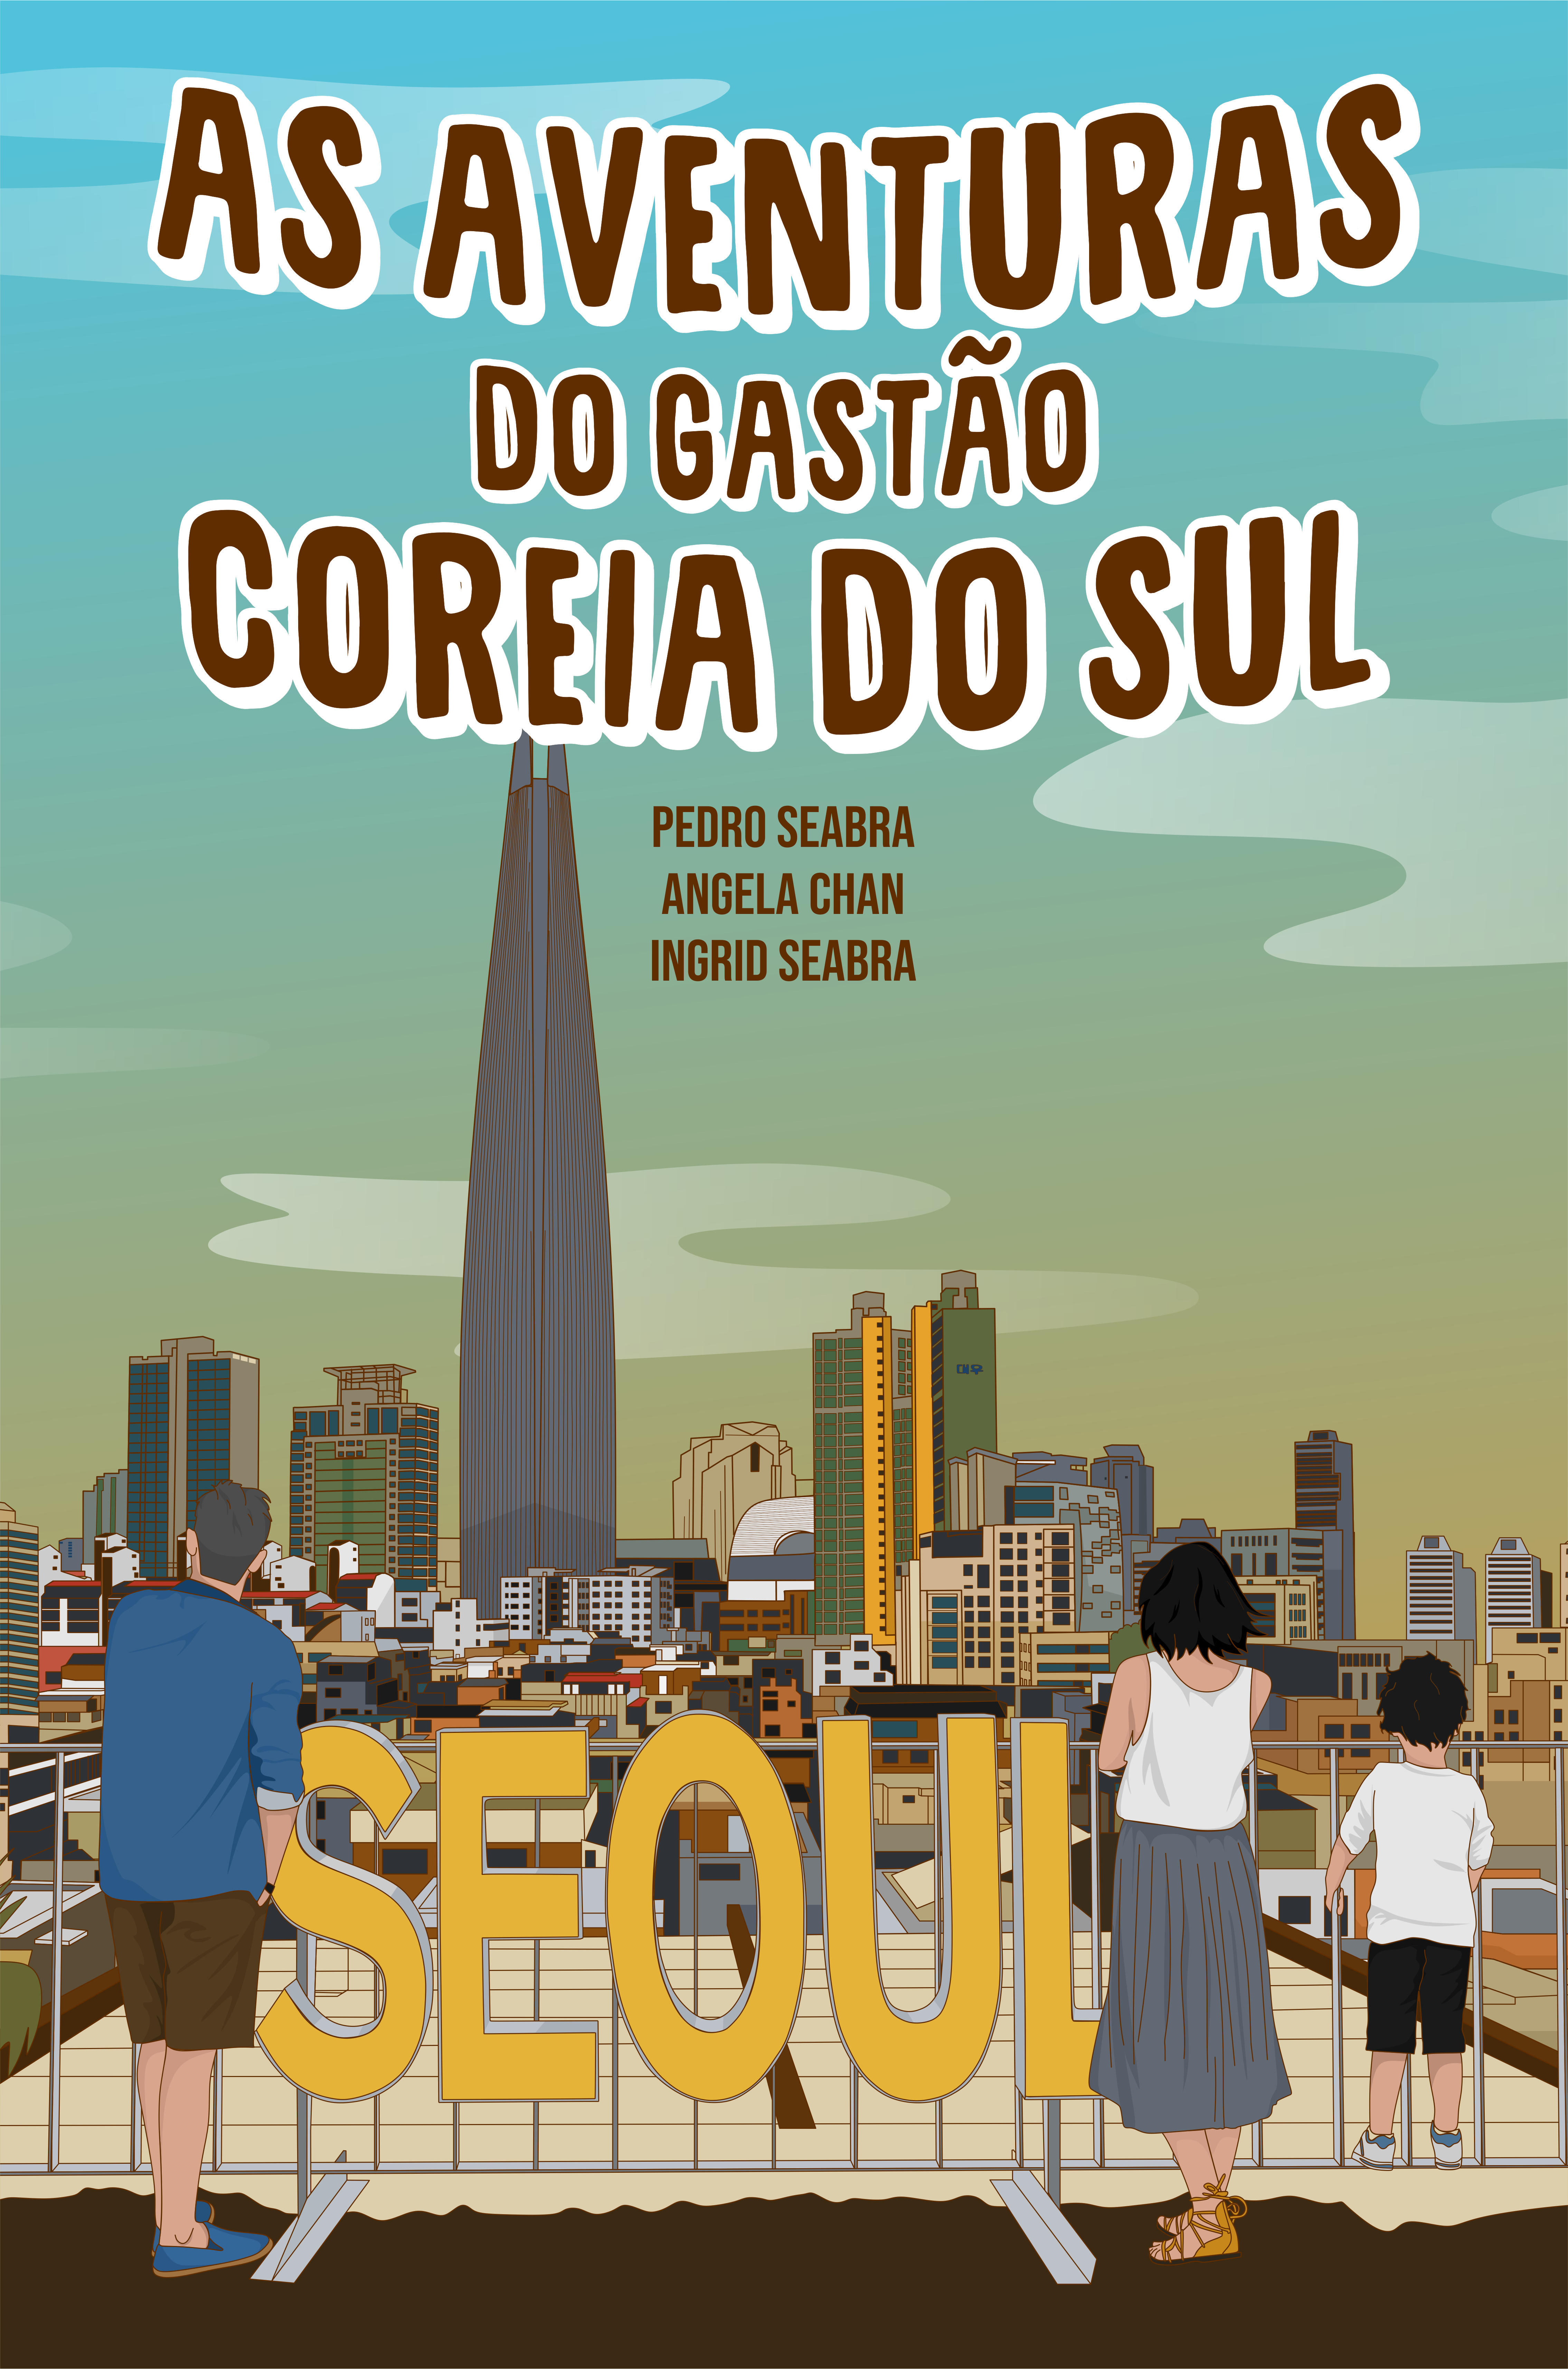 As Aventuras do Gastao na Coreia do Sul Book - HorologyBooks.com